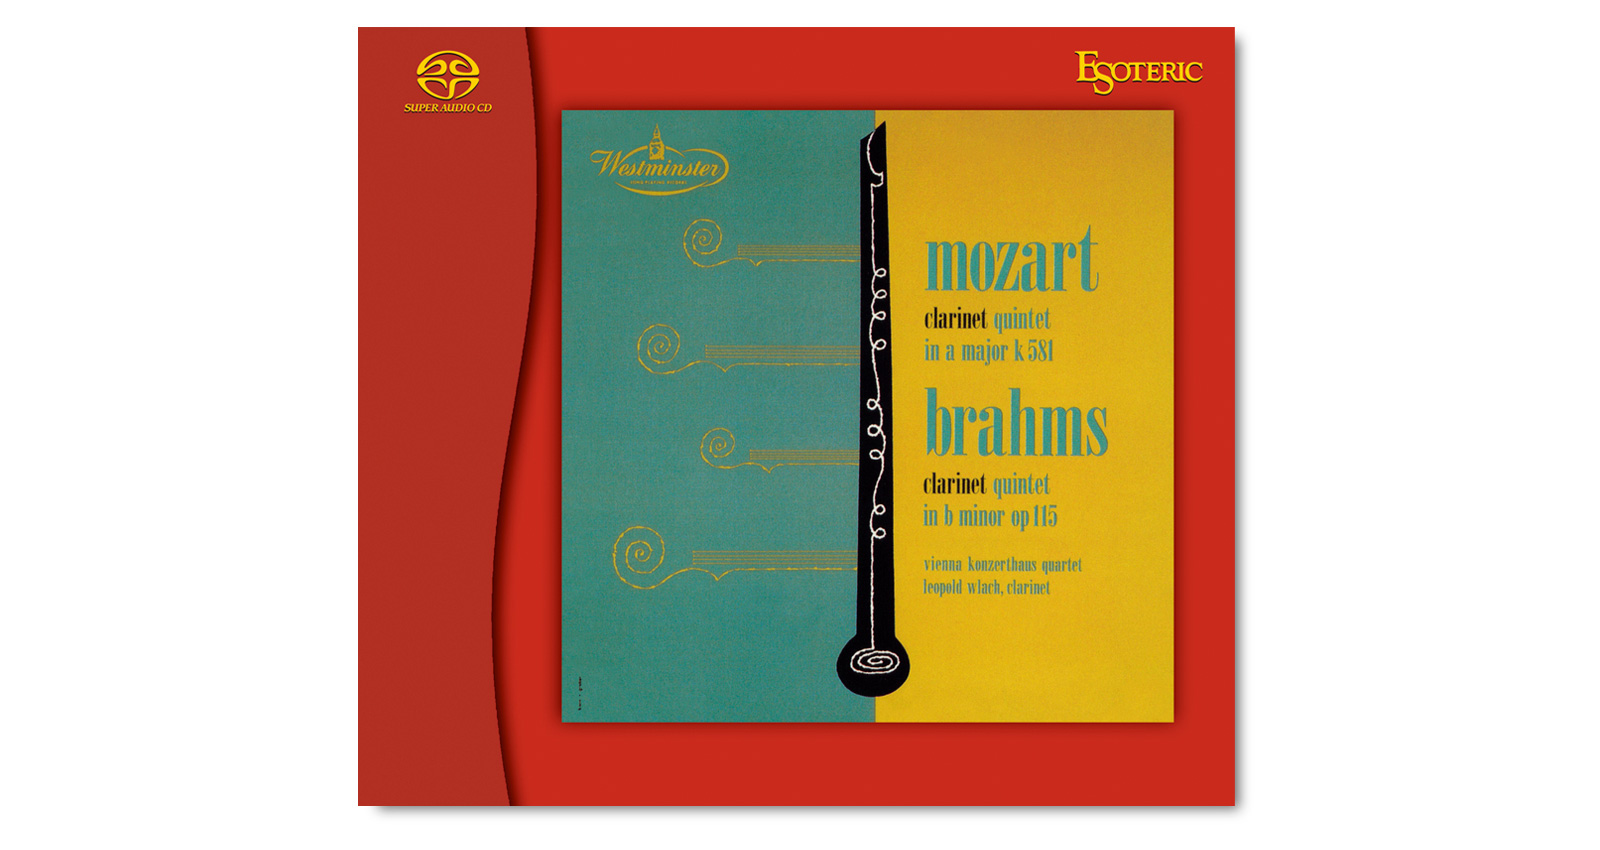 MOZART / BRAHMS Clarinet quintet